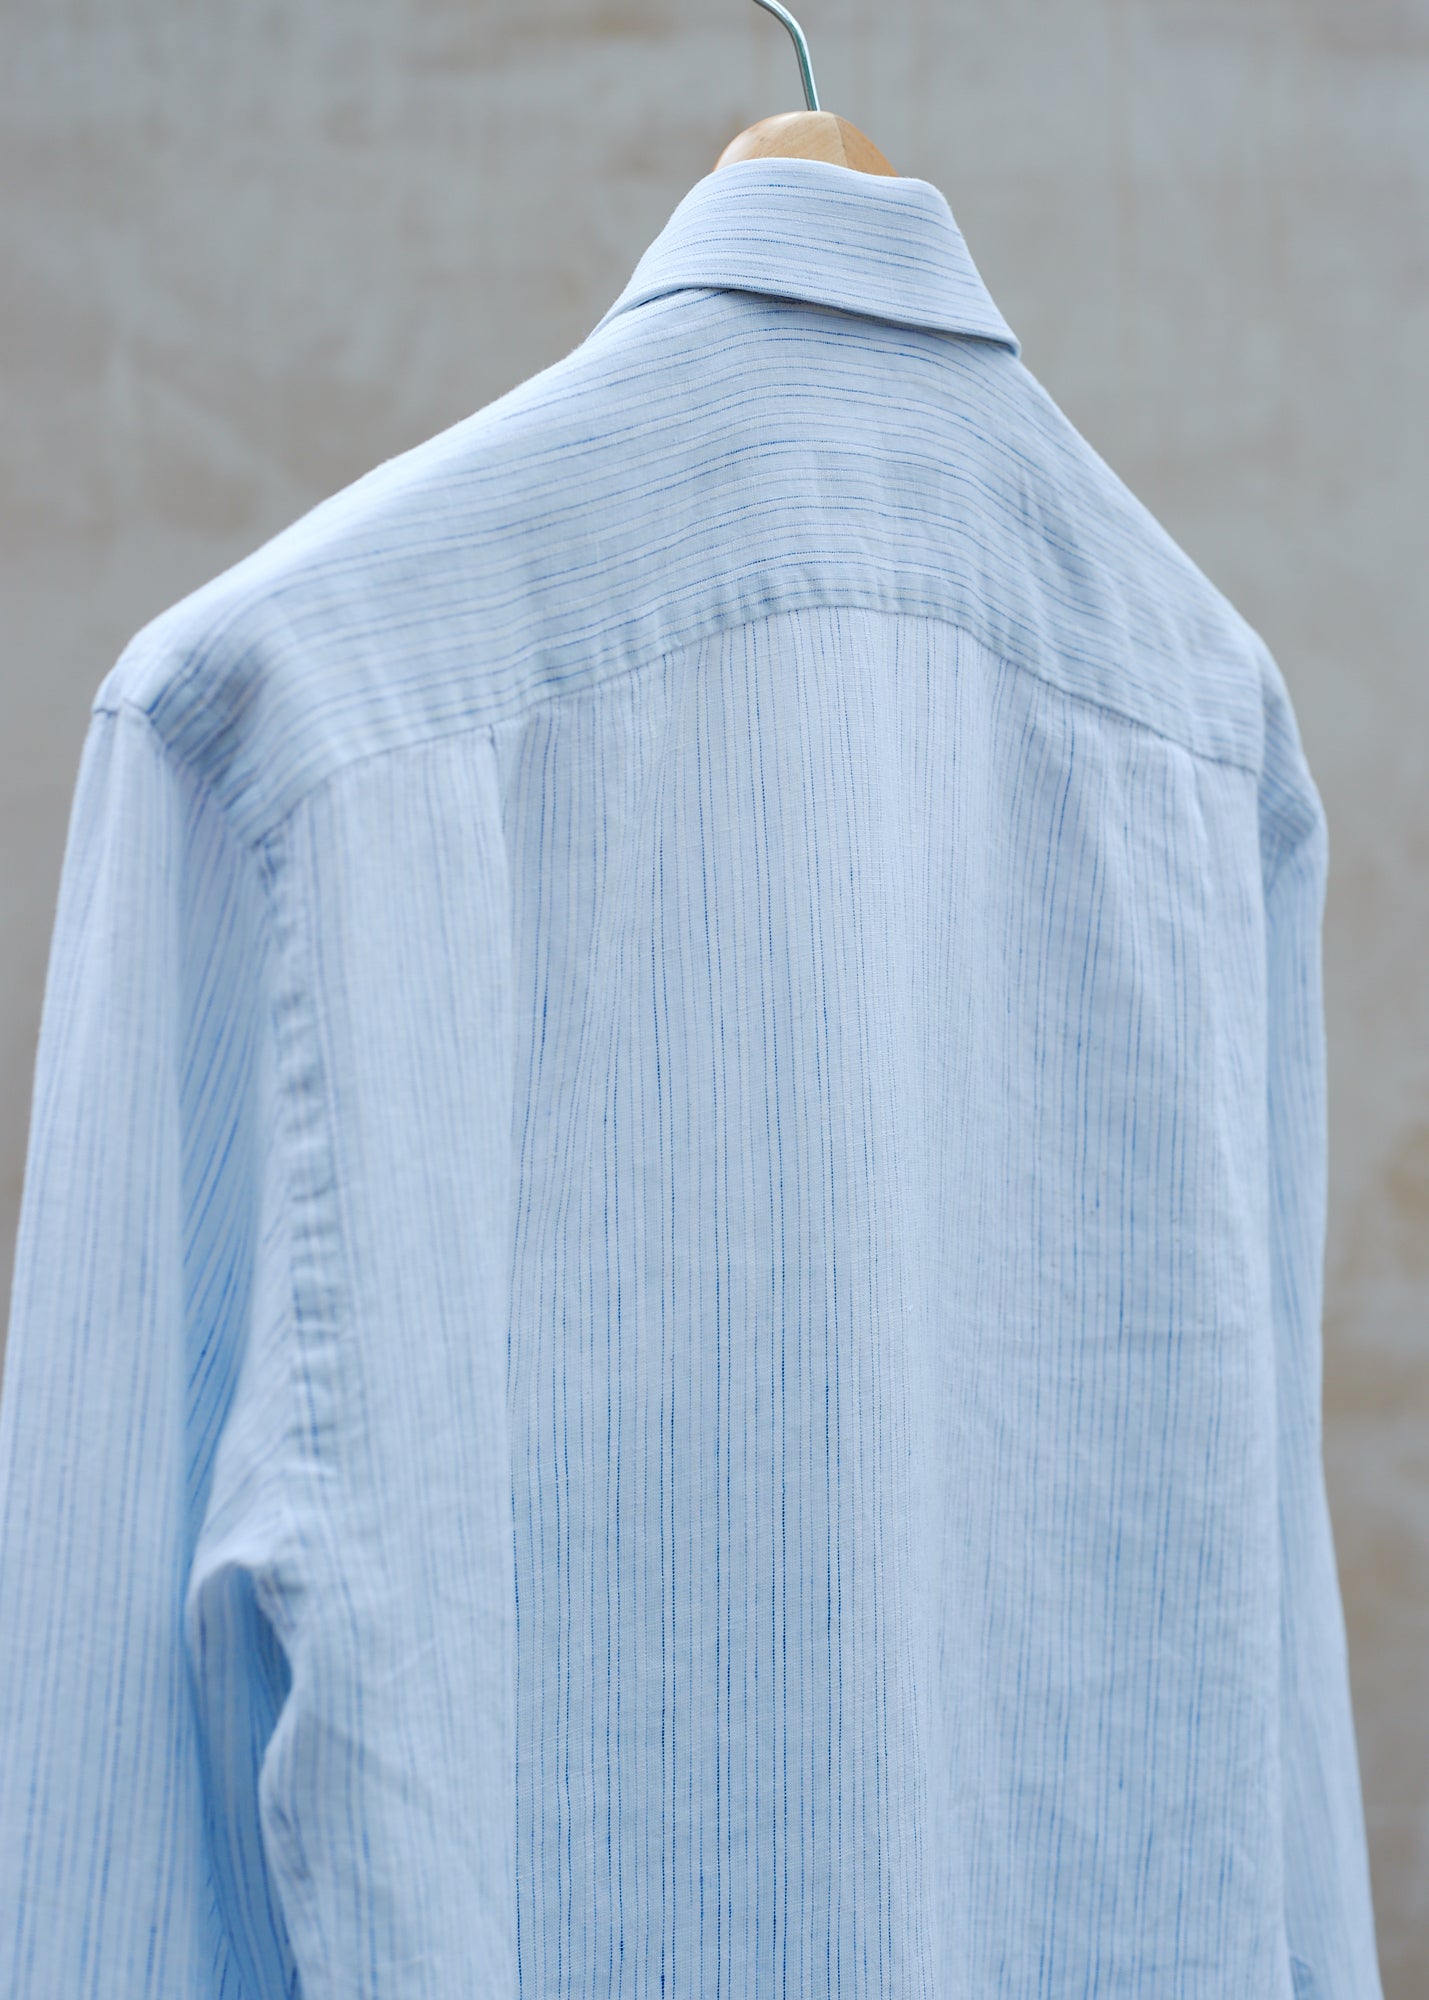 Ermenegildo Zegna Light Blue & White Linen Shirt - M/L